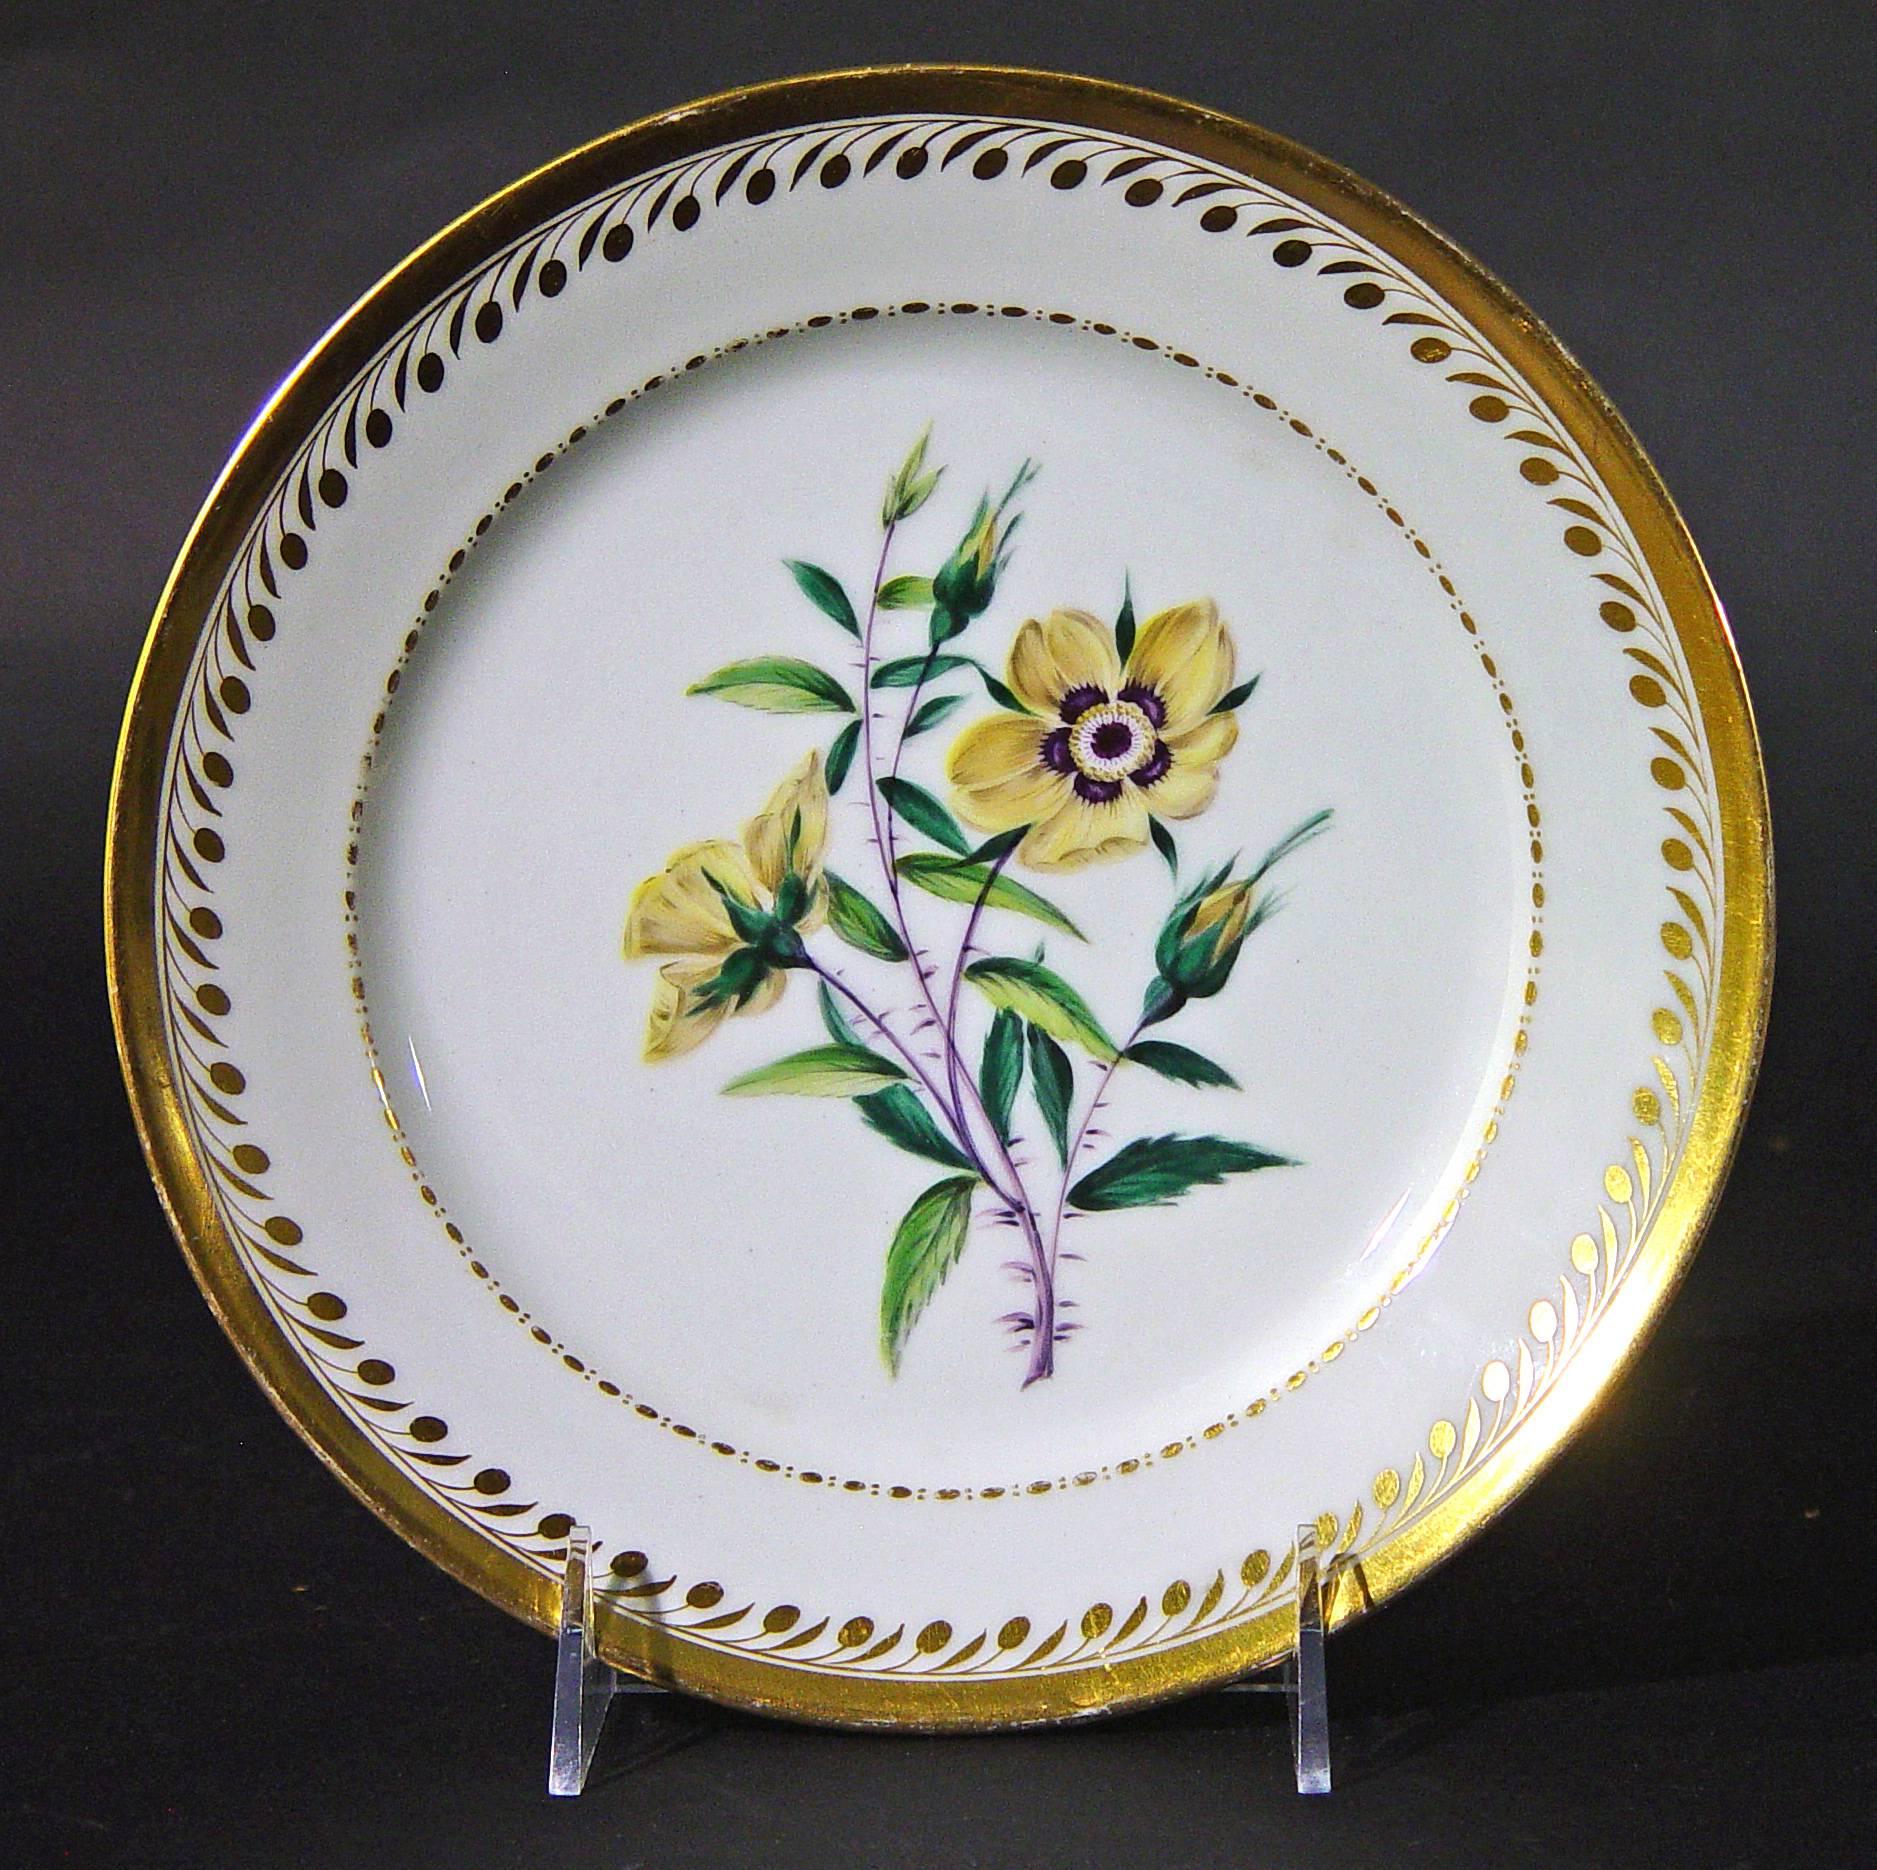 French Antique Paris Porcelain Botanical Set of Plates, Flamen-Fleury For Sale